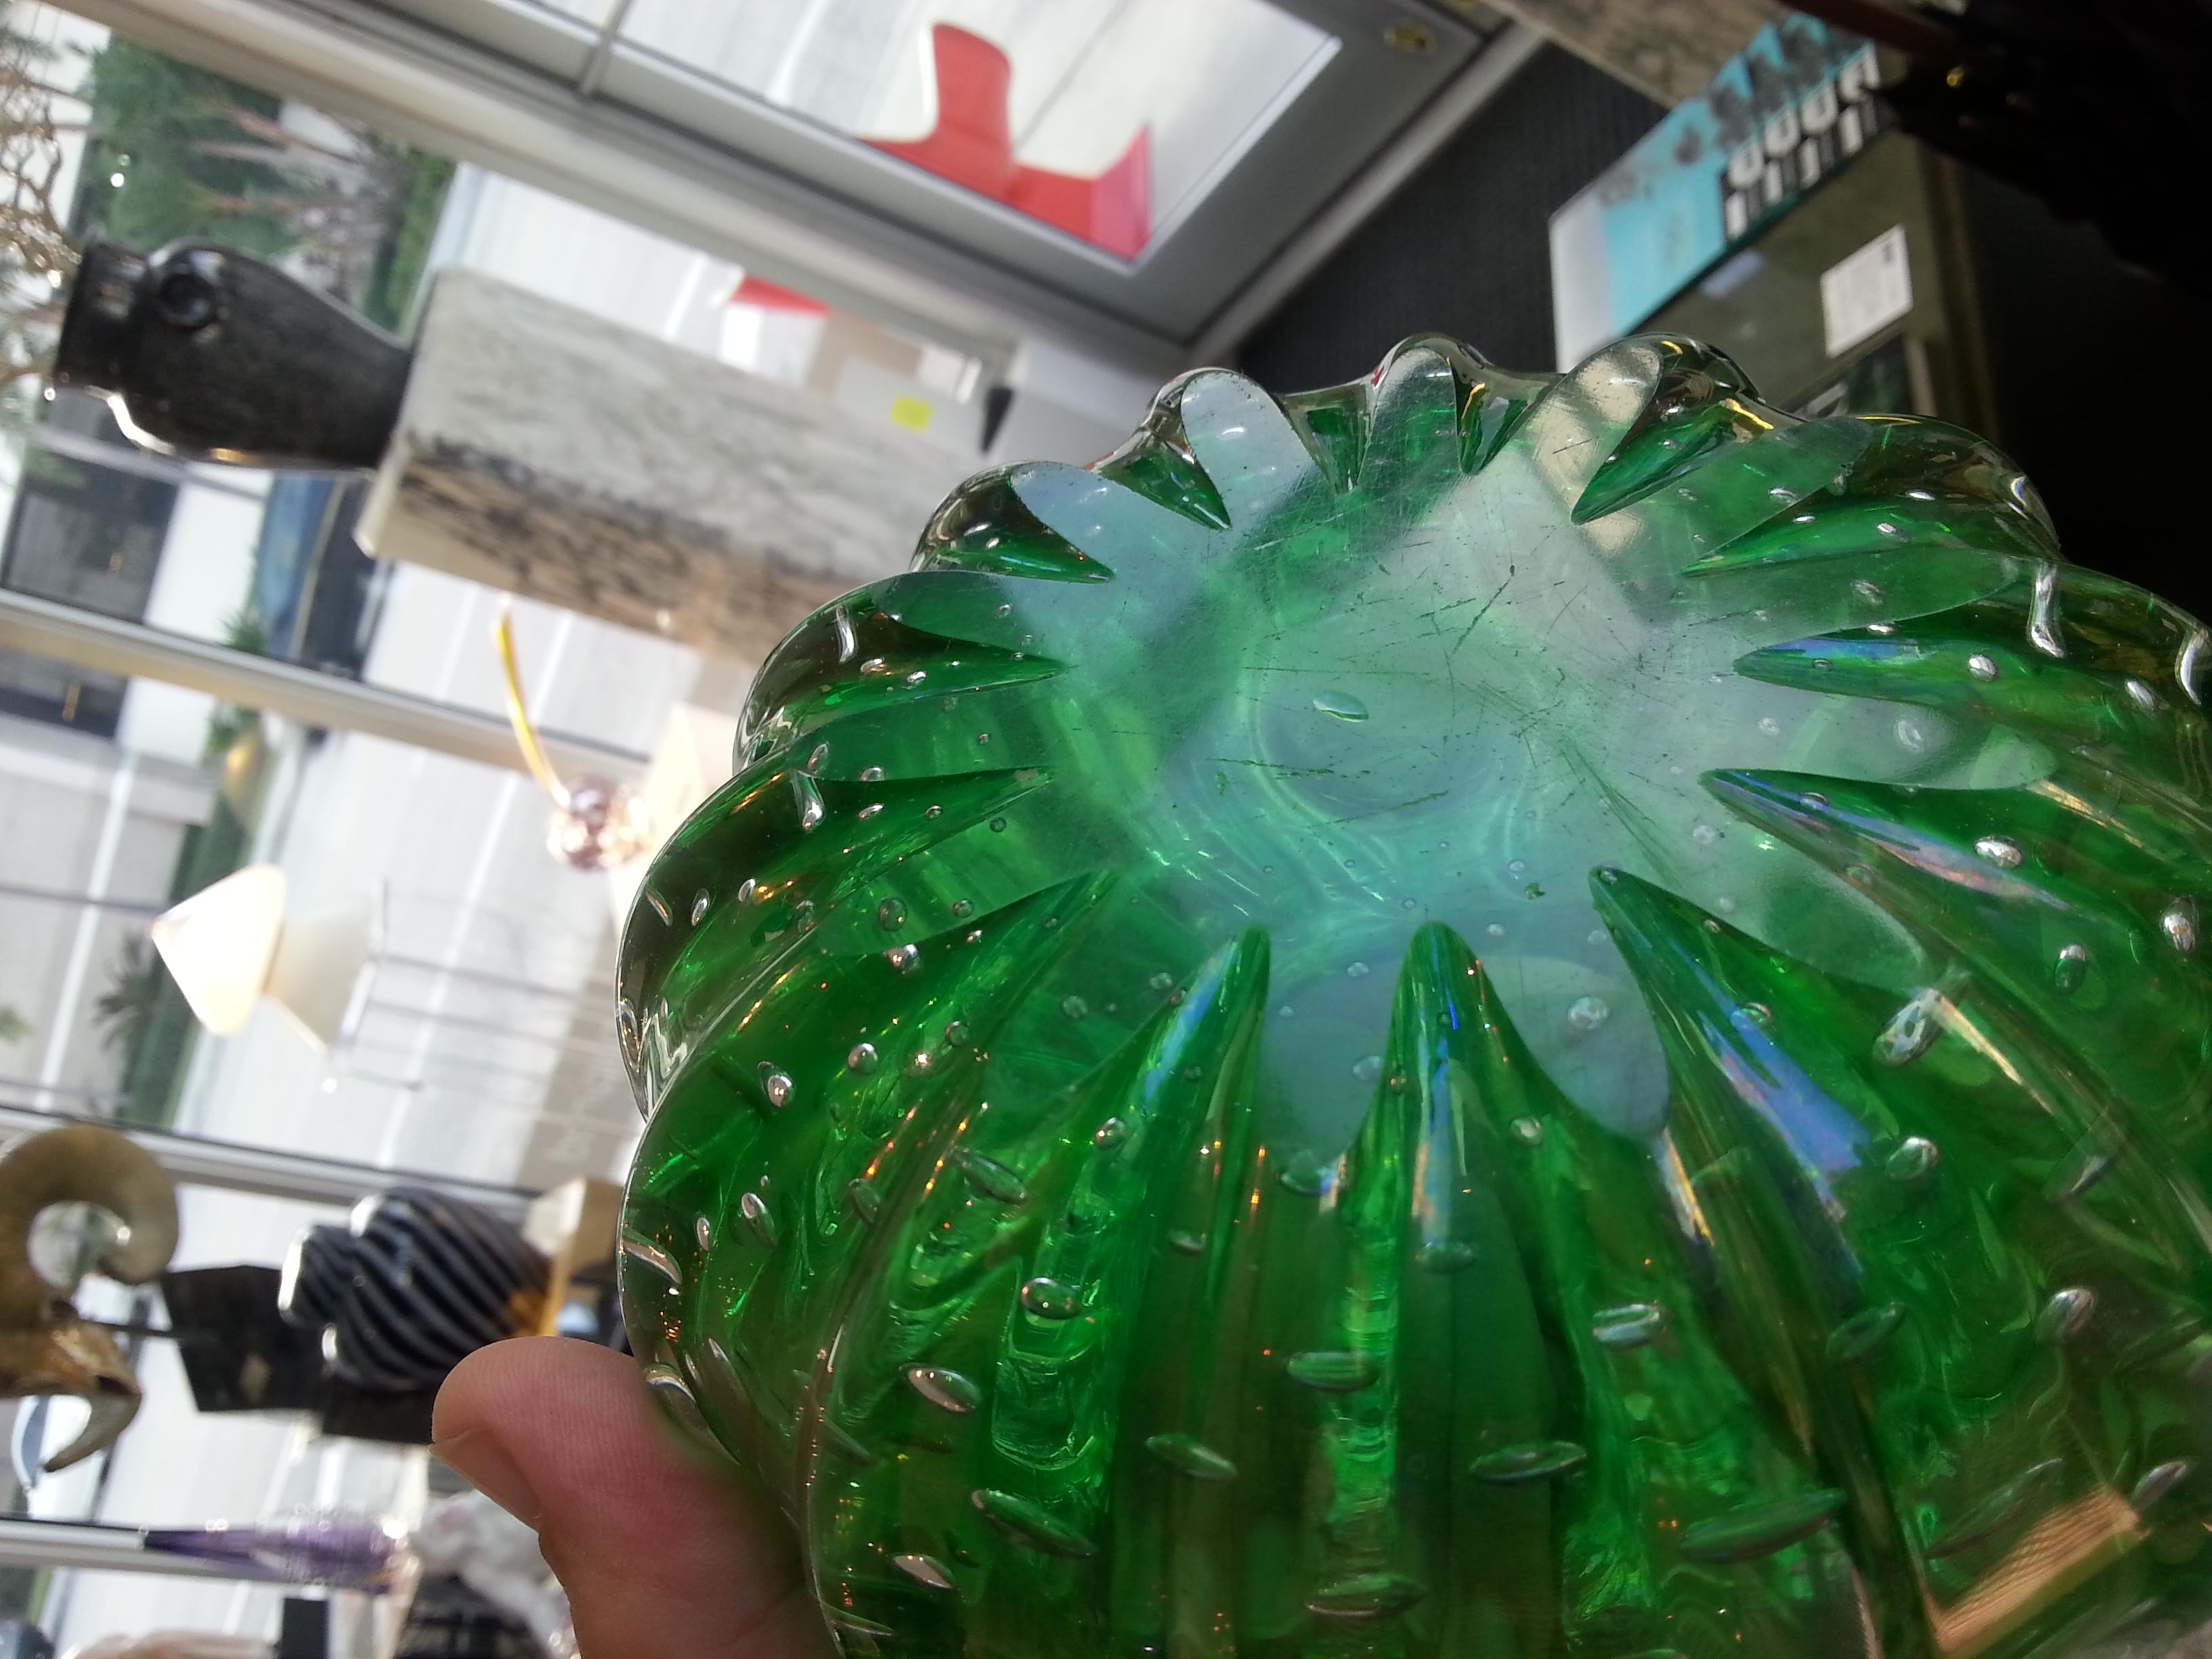 Green Murano Glass Vase 2